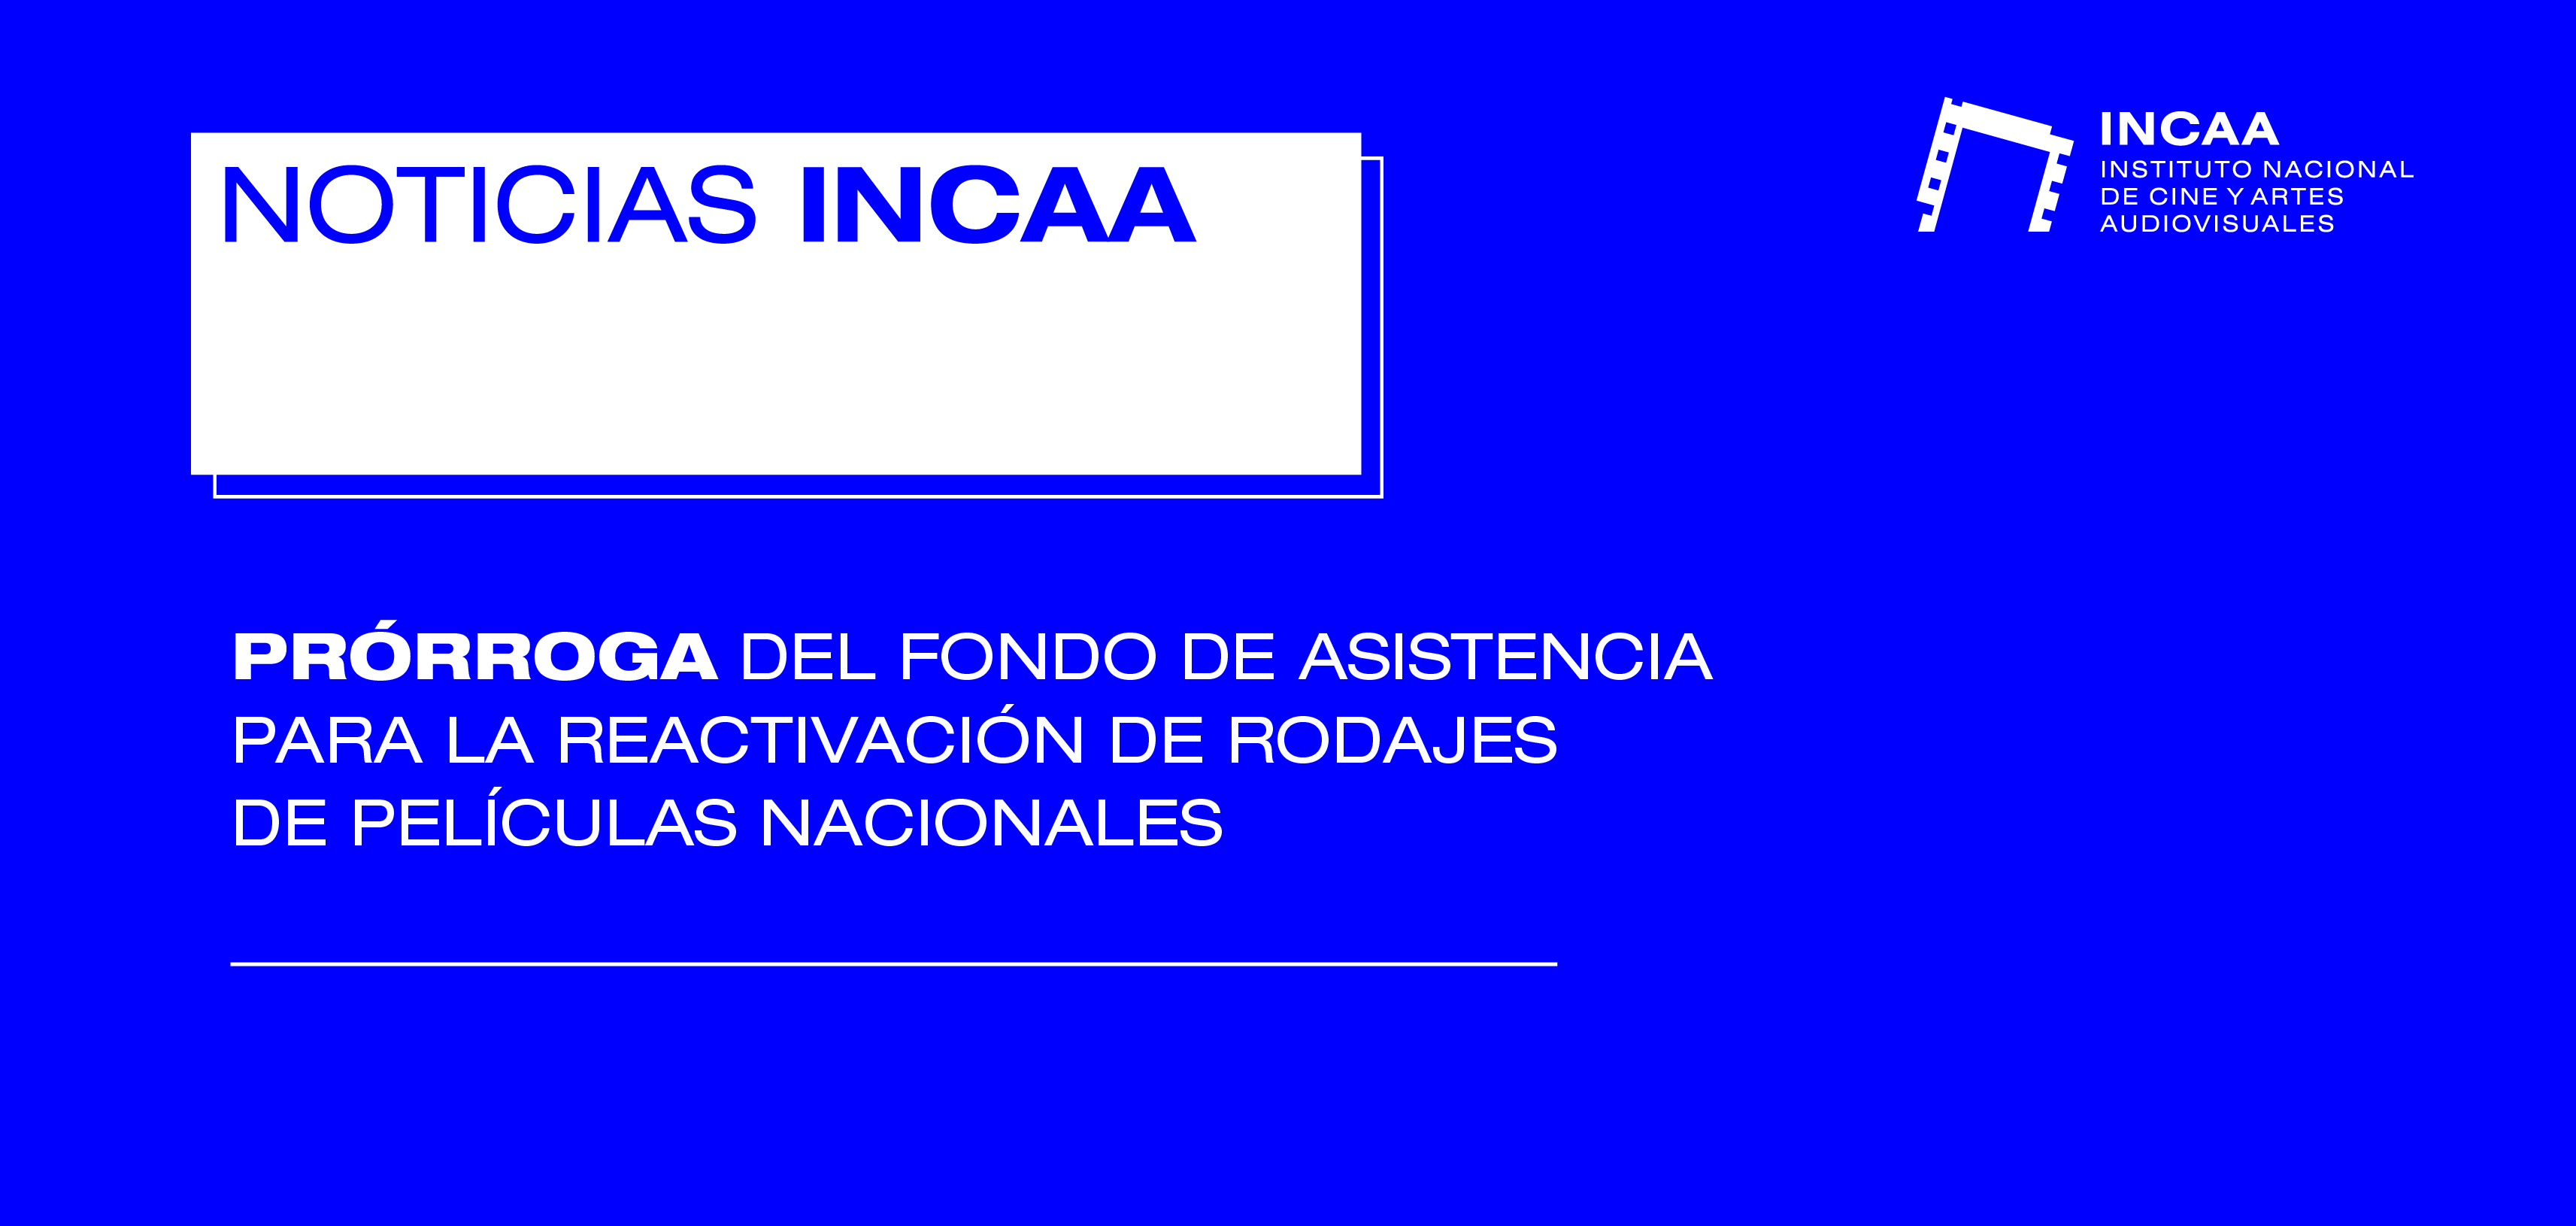 Prorroga del Fondo de Asistencia INCAA 2022